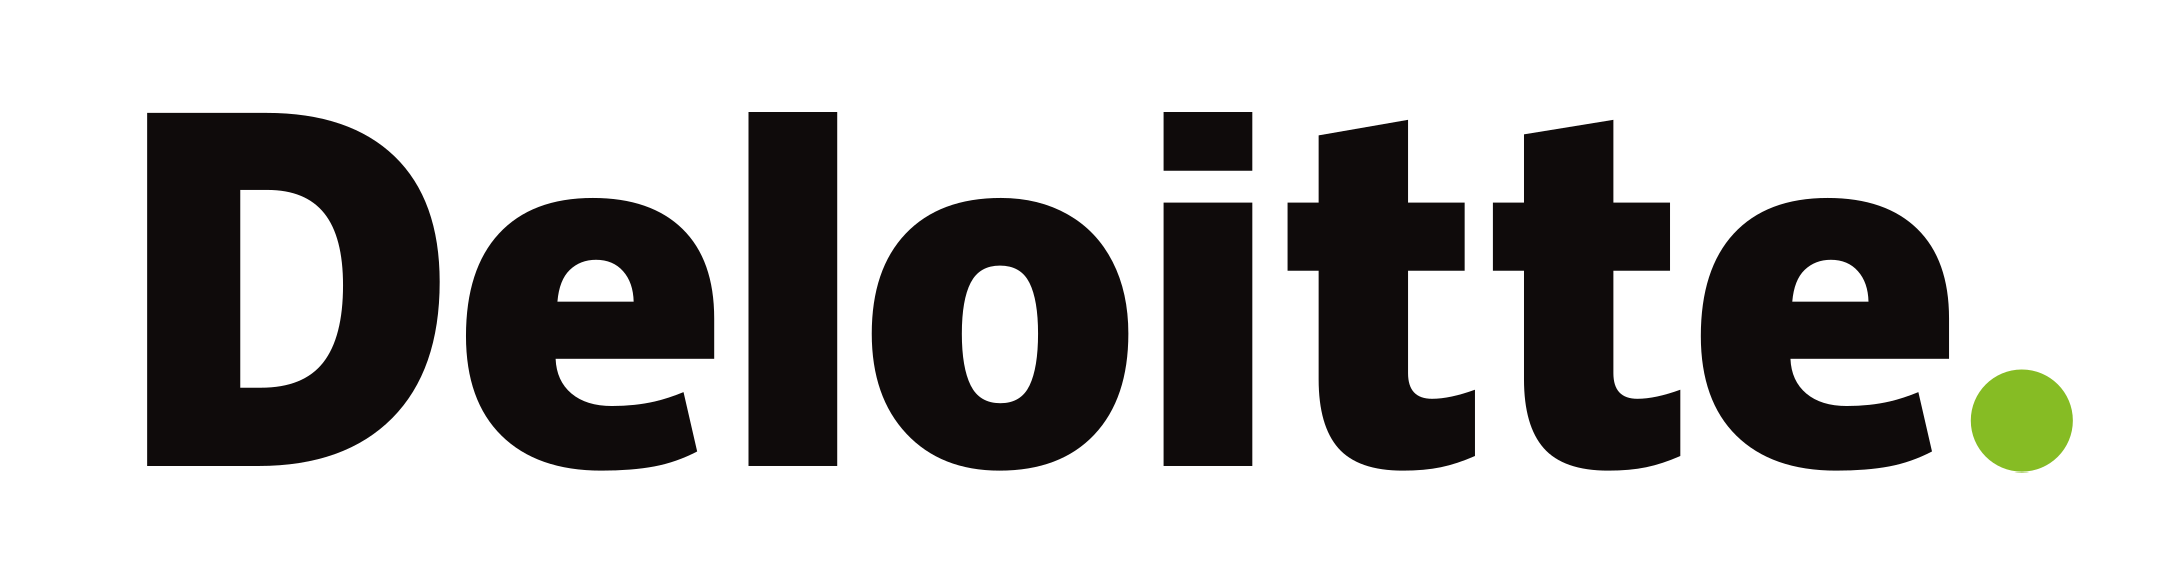 Deloitte-Logo-e1505158716925